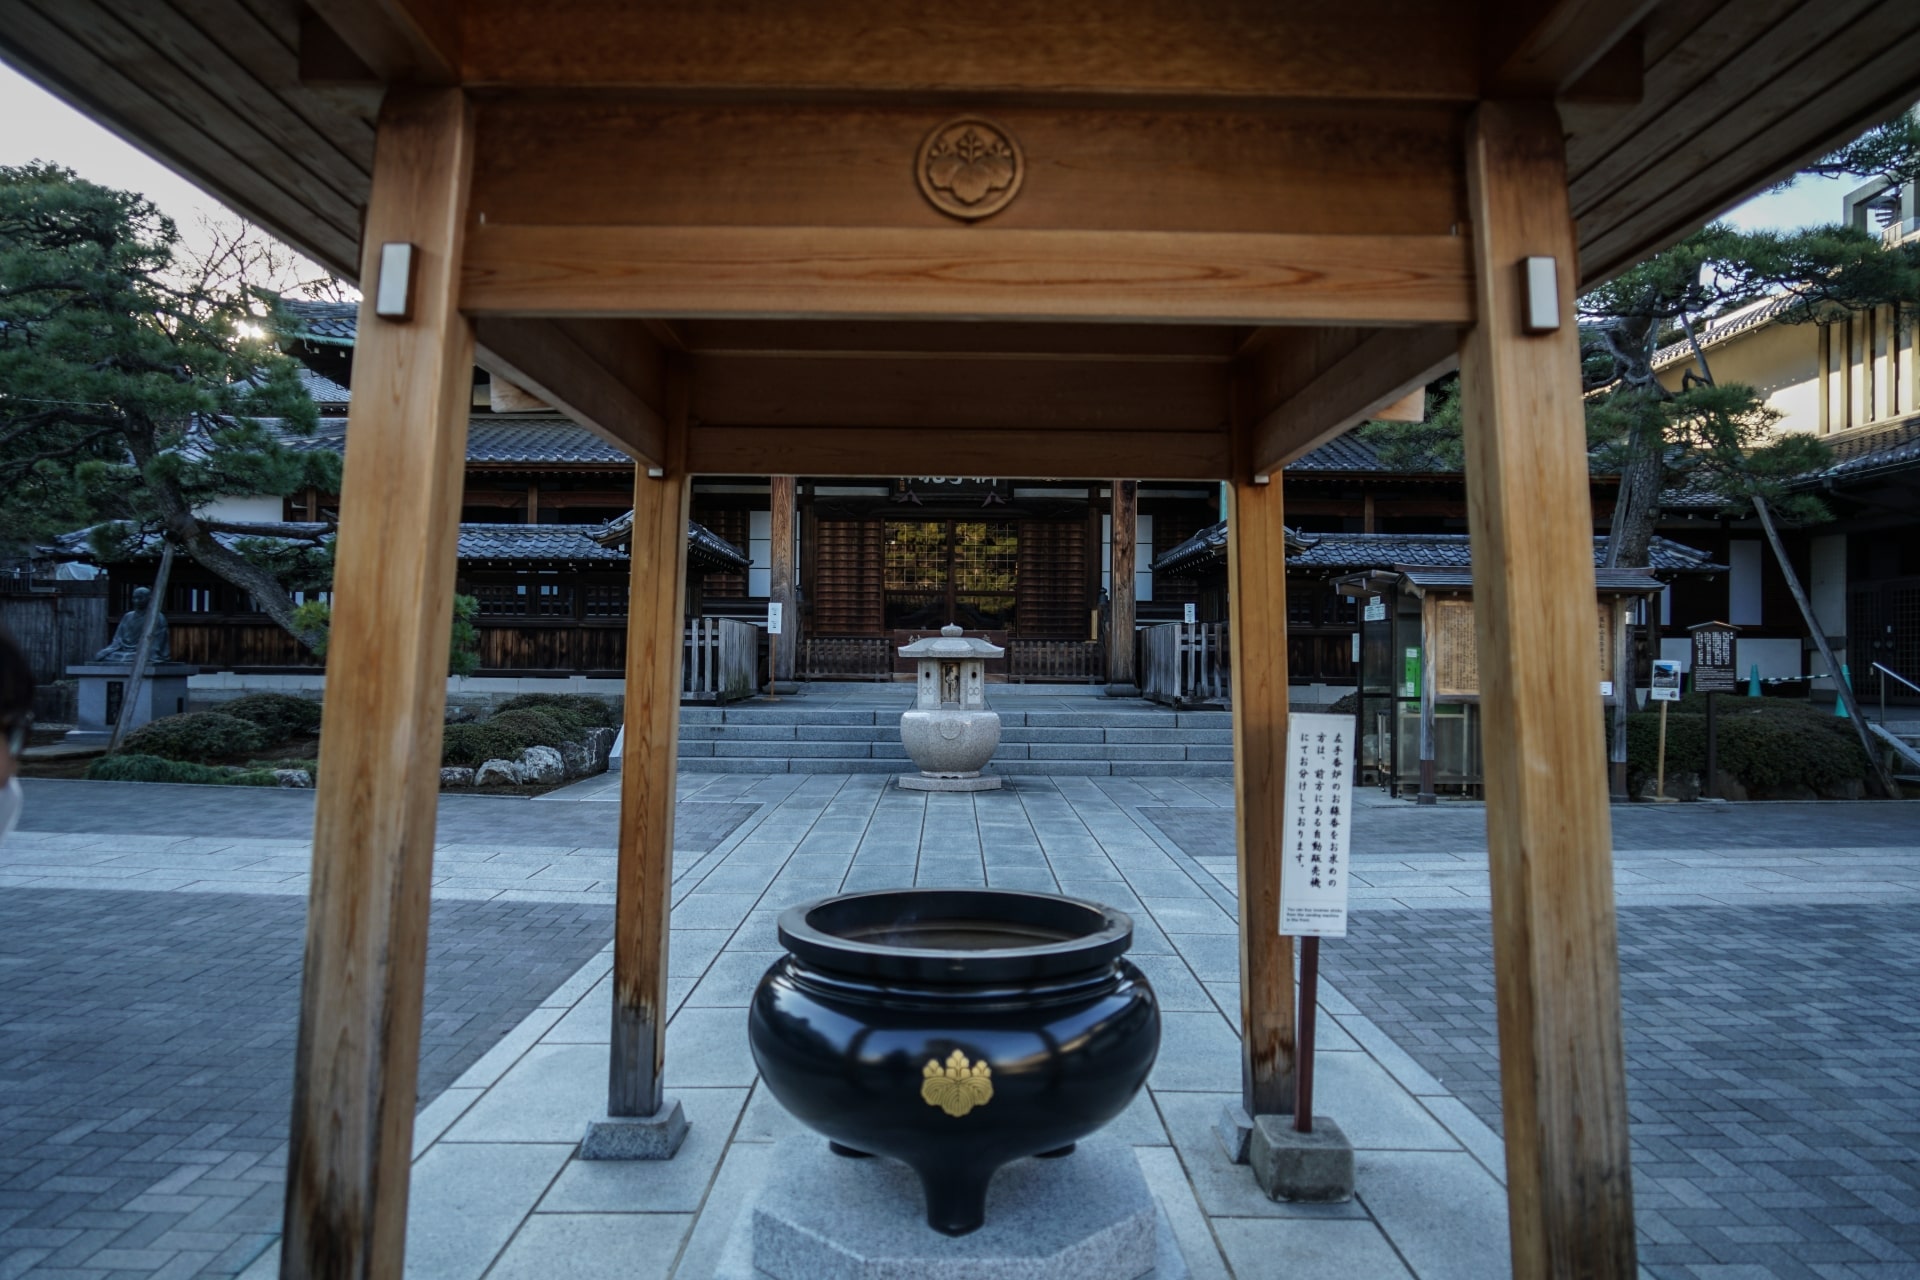 Sengakuji Temple: A Buddhist Temple in Shinagawa